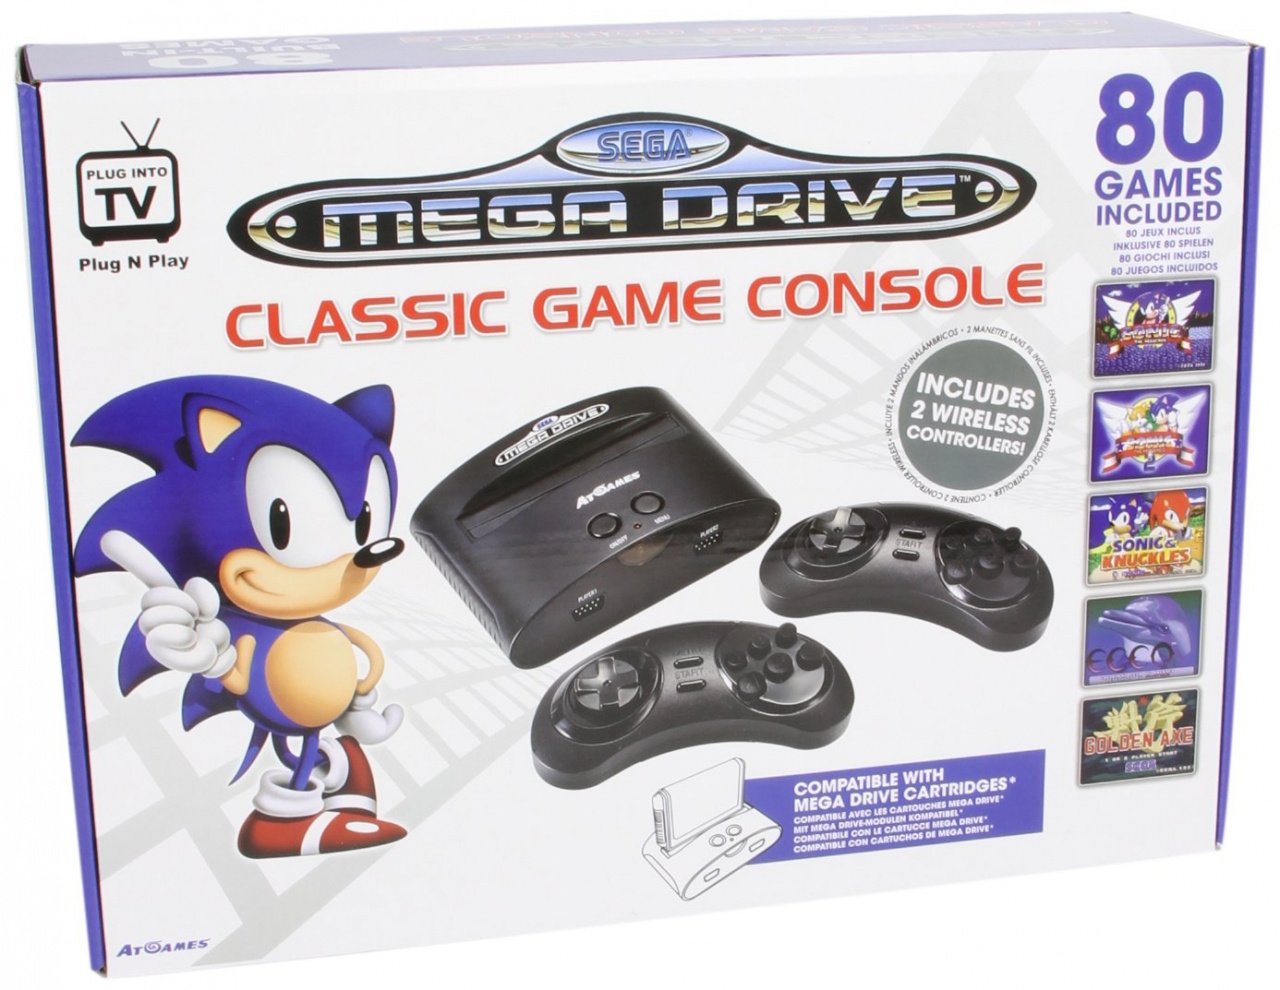 Megadrive ROMs Download - Free Sega Genesis Games - ConsoleRoms